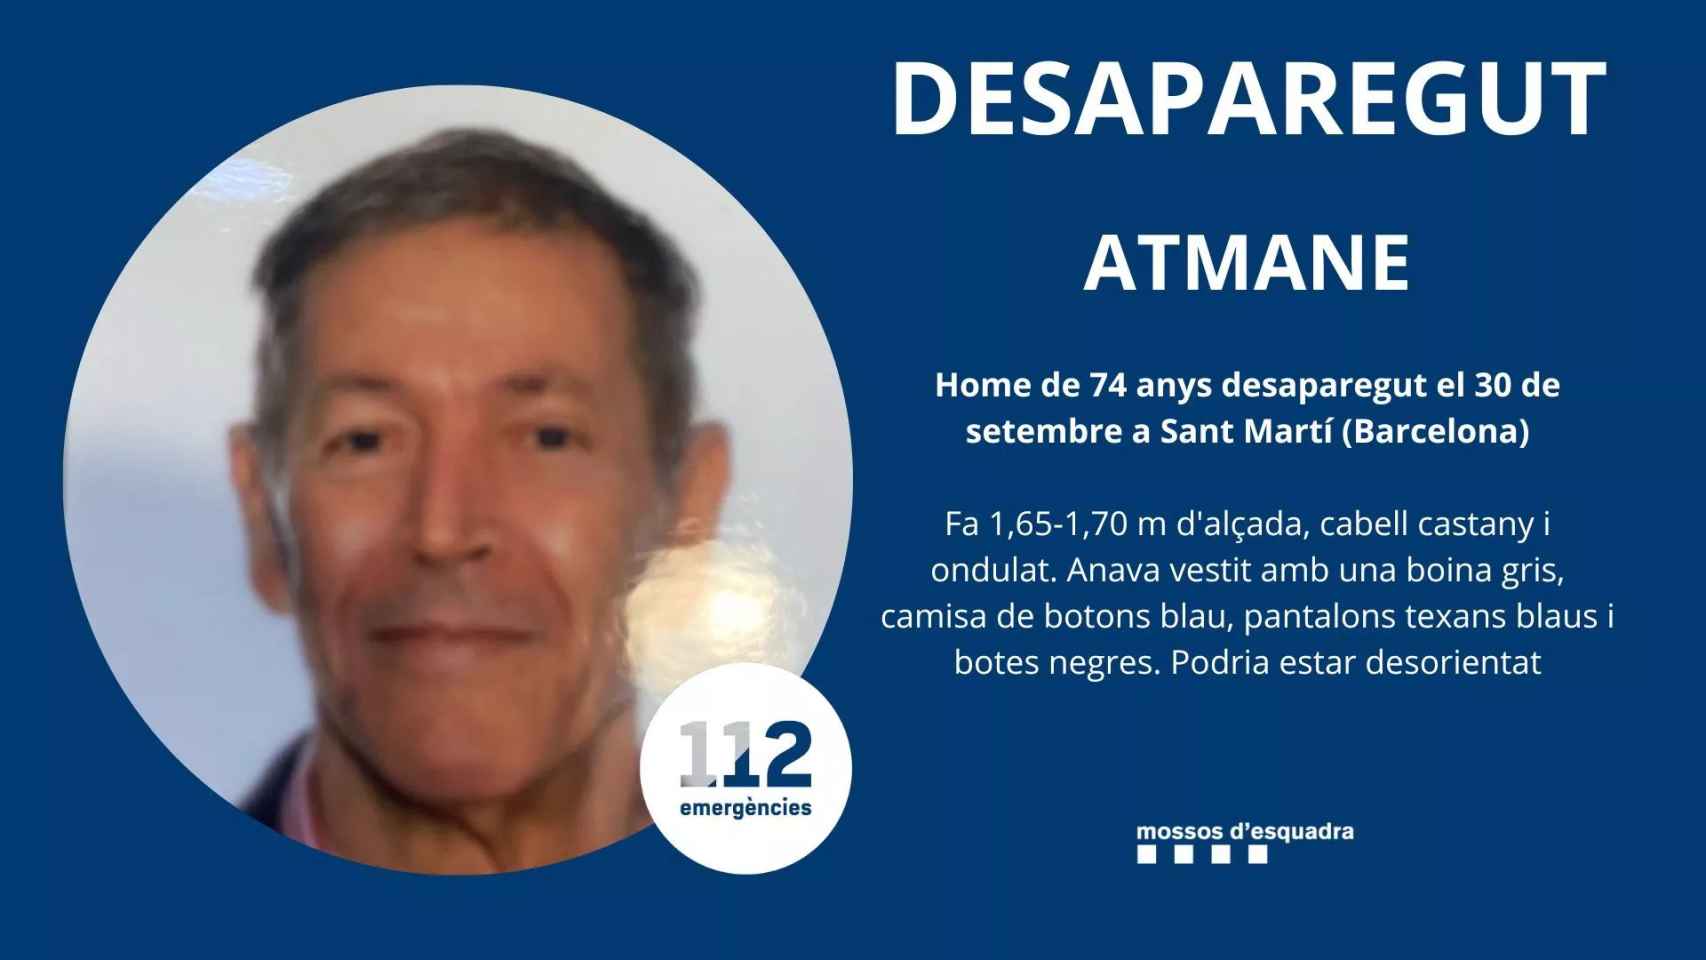 Aspecto de Atmane, el hombre desaparecido en Barcelona / MOSSOS